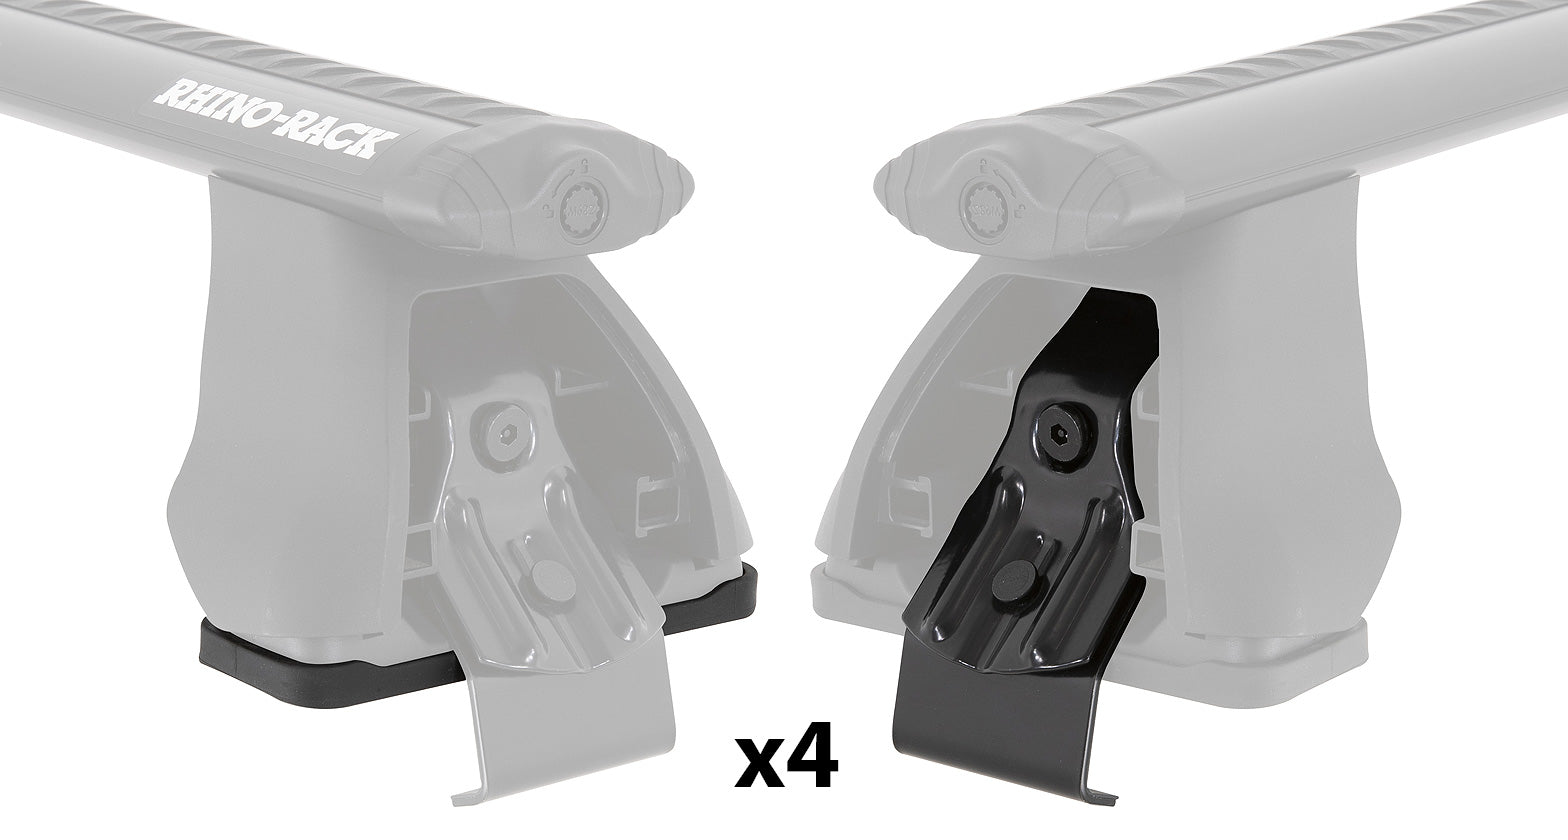 PAD & CLAMP KIT FOR RHINO 2500 MULTI FIT - DK182